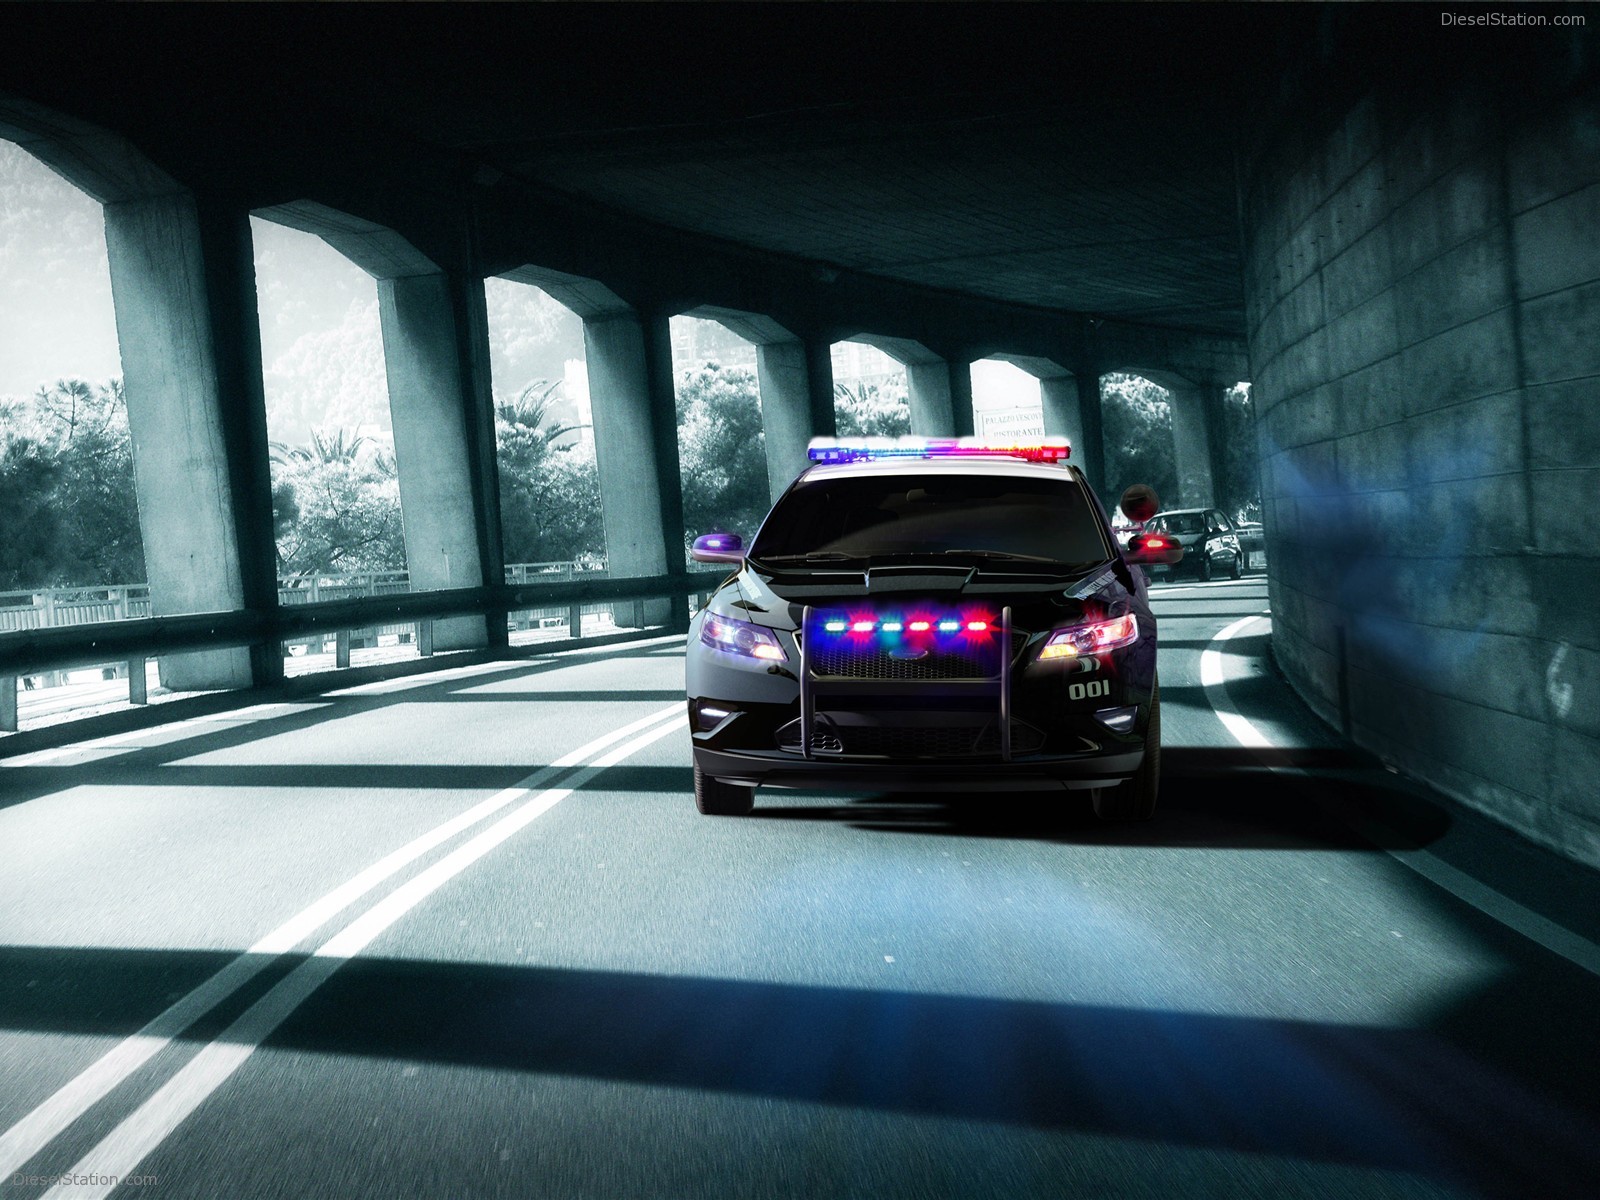 43+] Police Car Wallpaper Backgrounds - WallpaperSafari